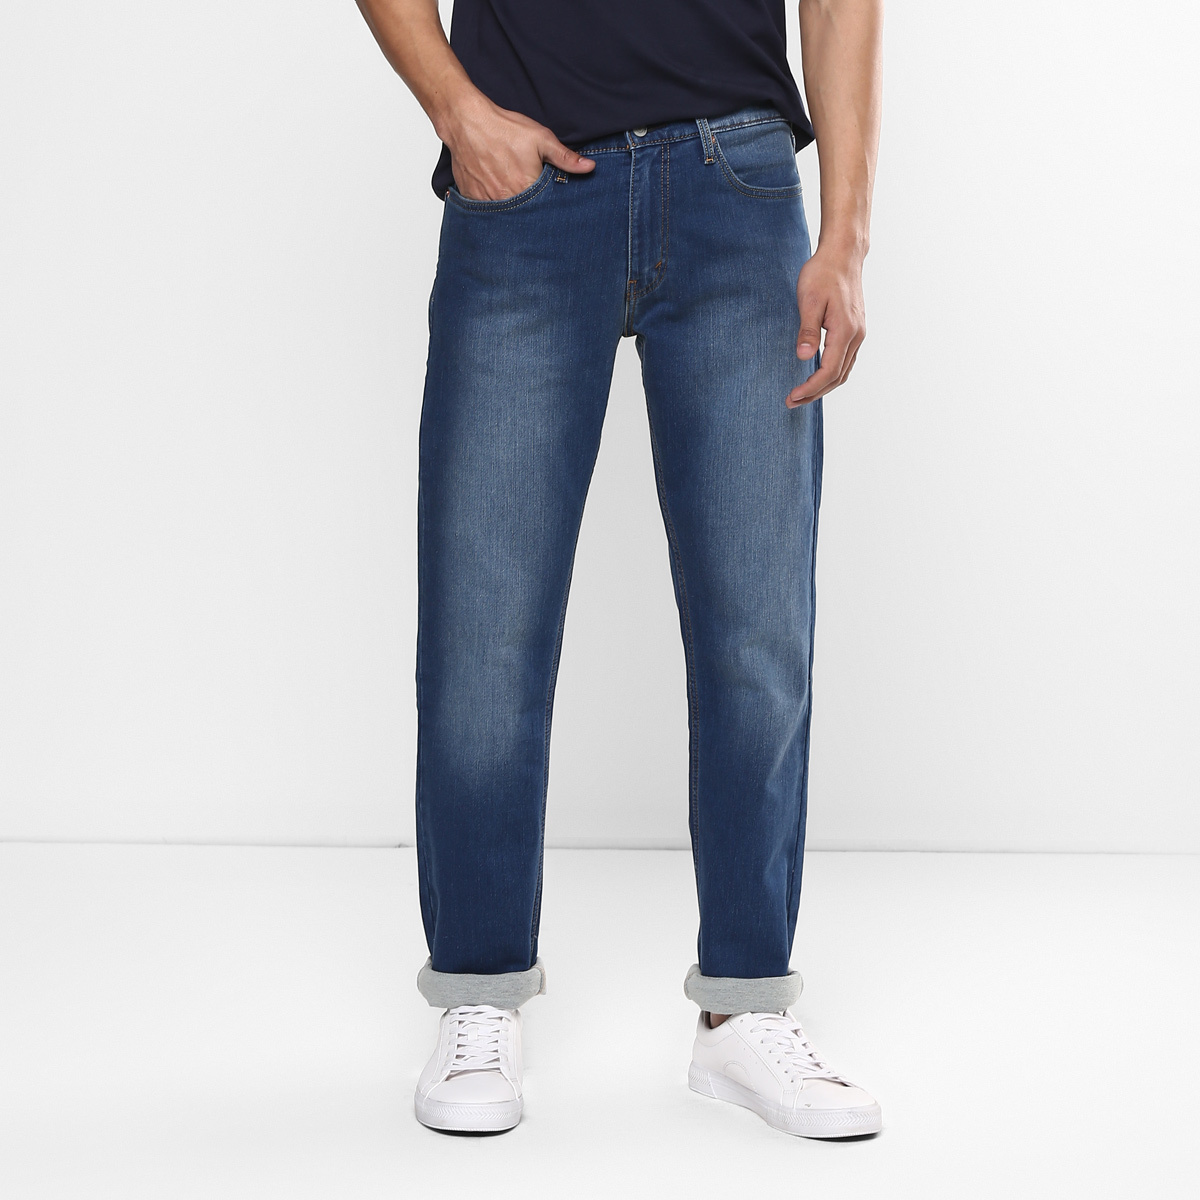 LEVIS MEN Single Length Jeans 23677-0180 Blue 40